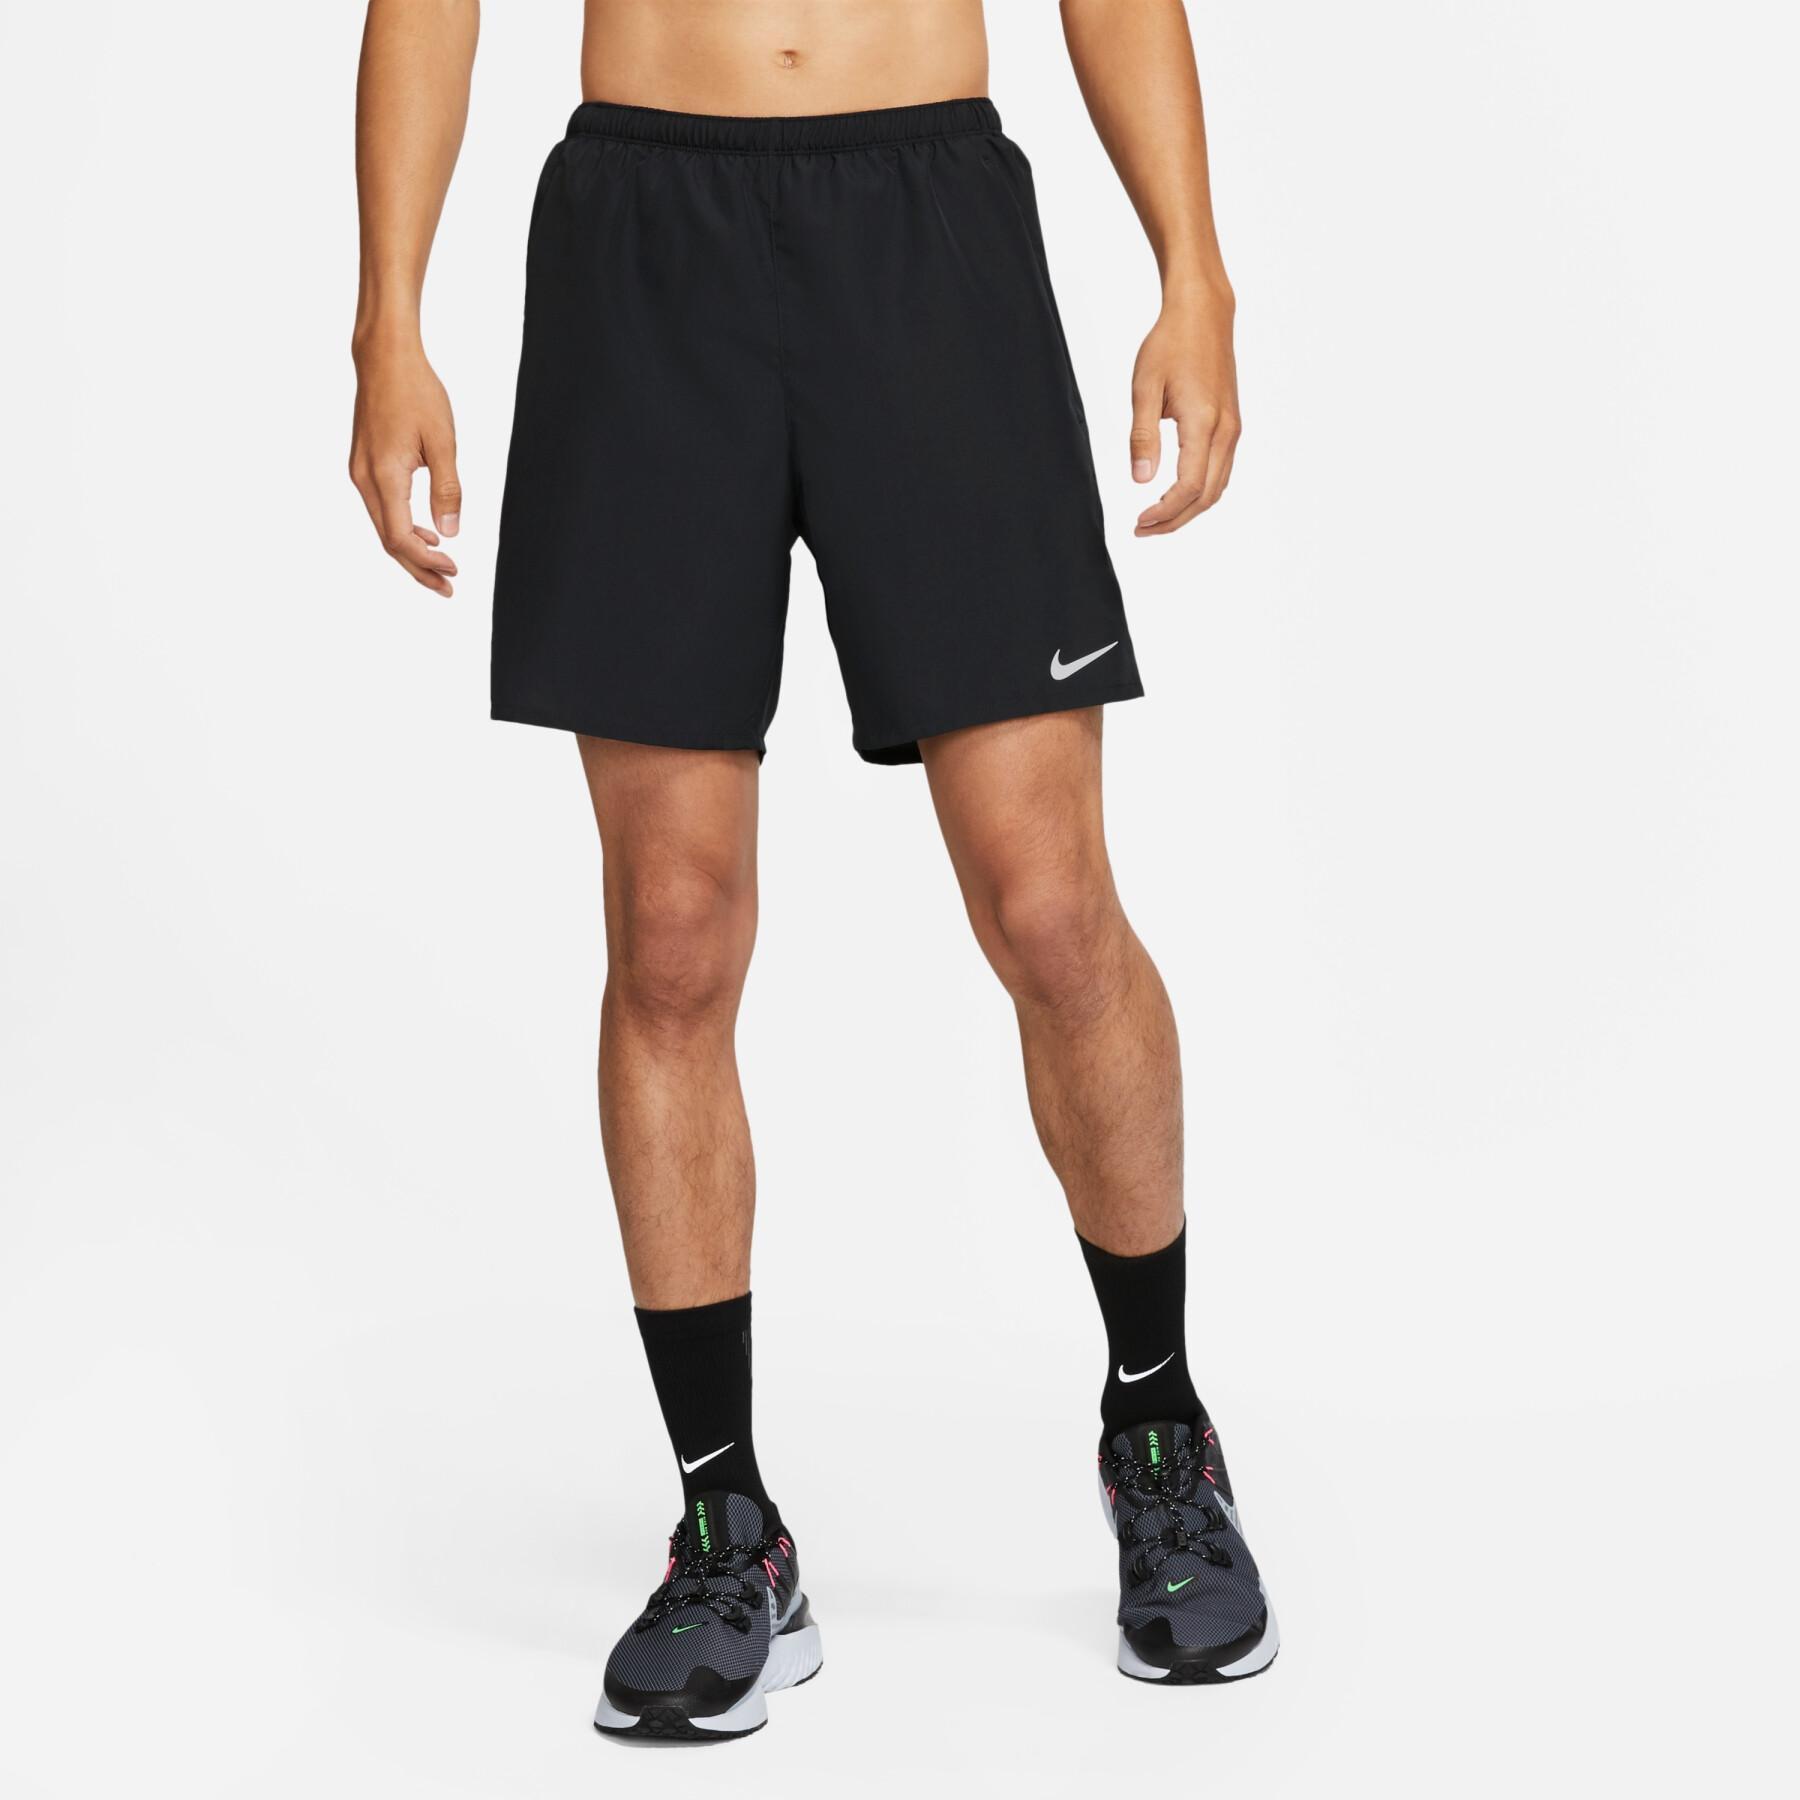 Short Nike challenger